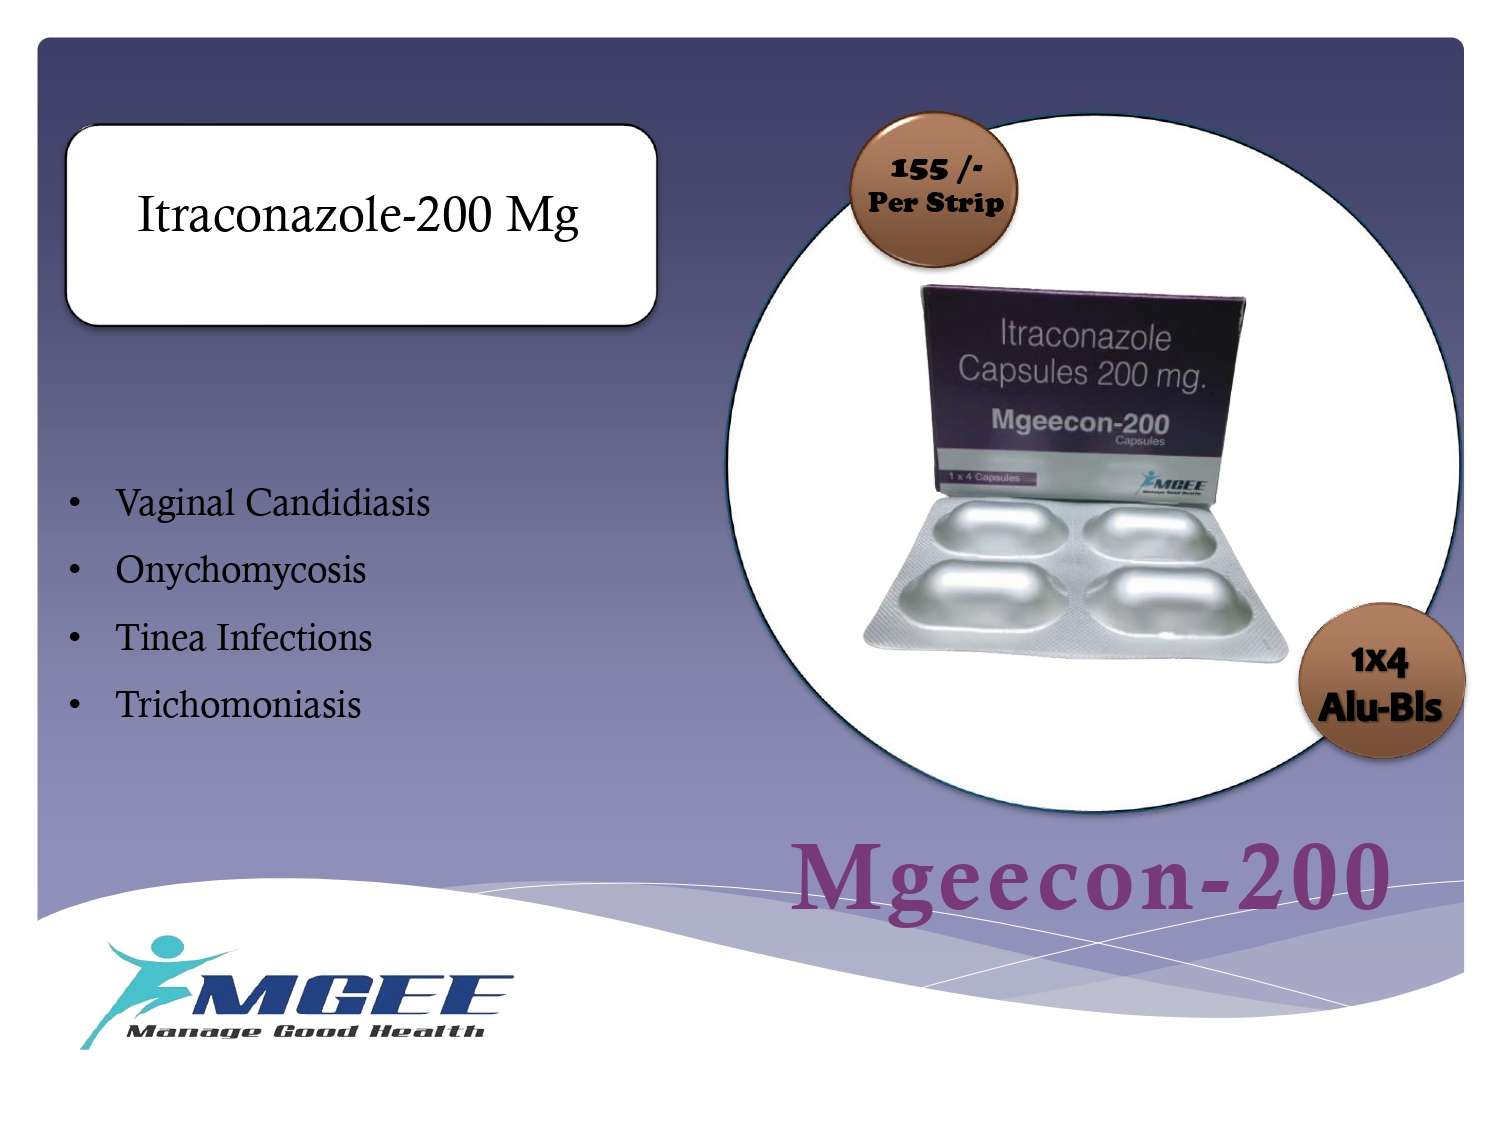 itraconazole-200 mg